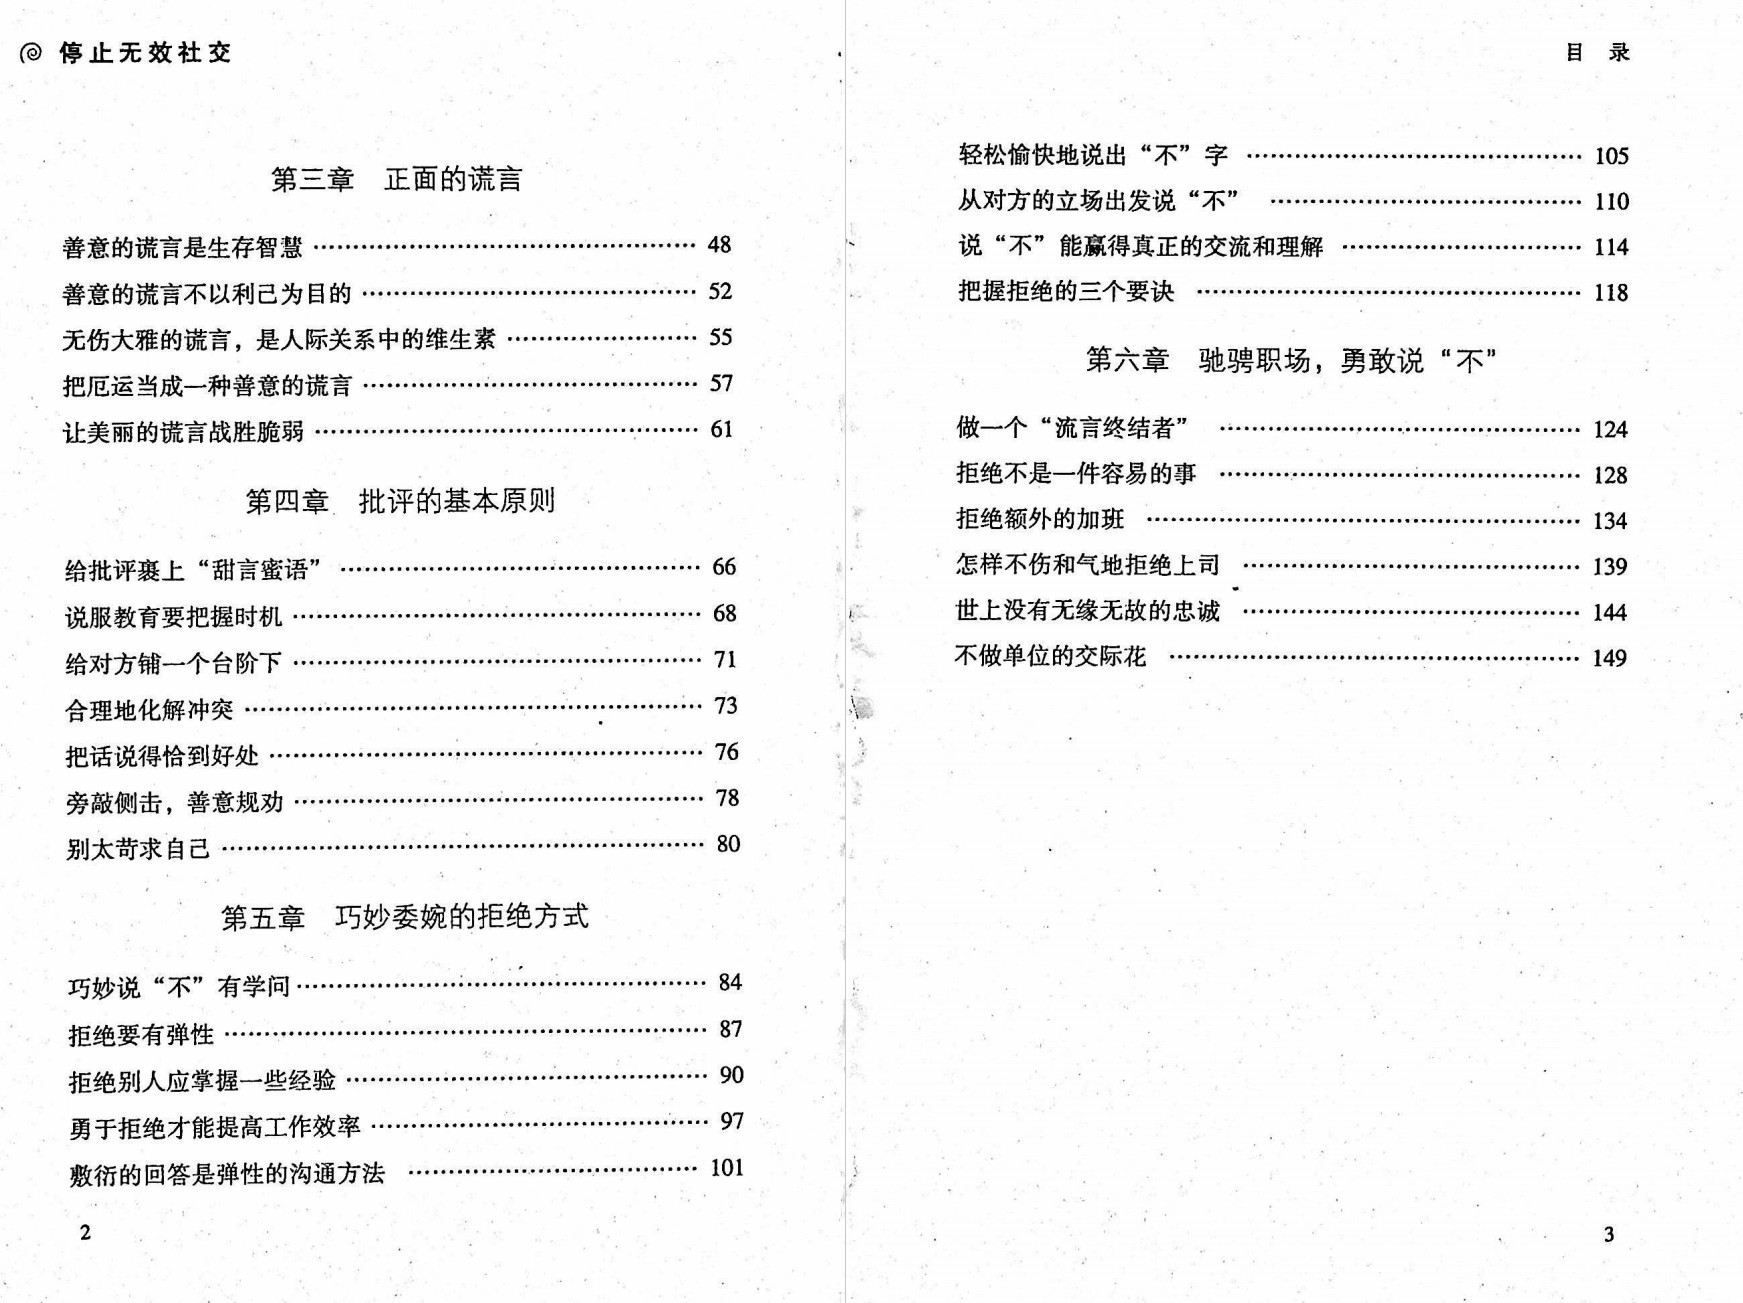 《停止无效社交》刘磊.pdf「百度网盘下载」PDF 电子书插图2